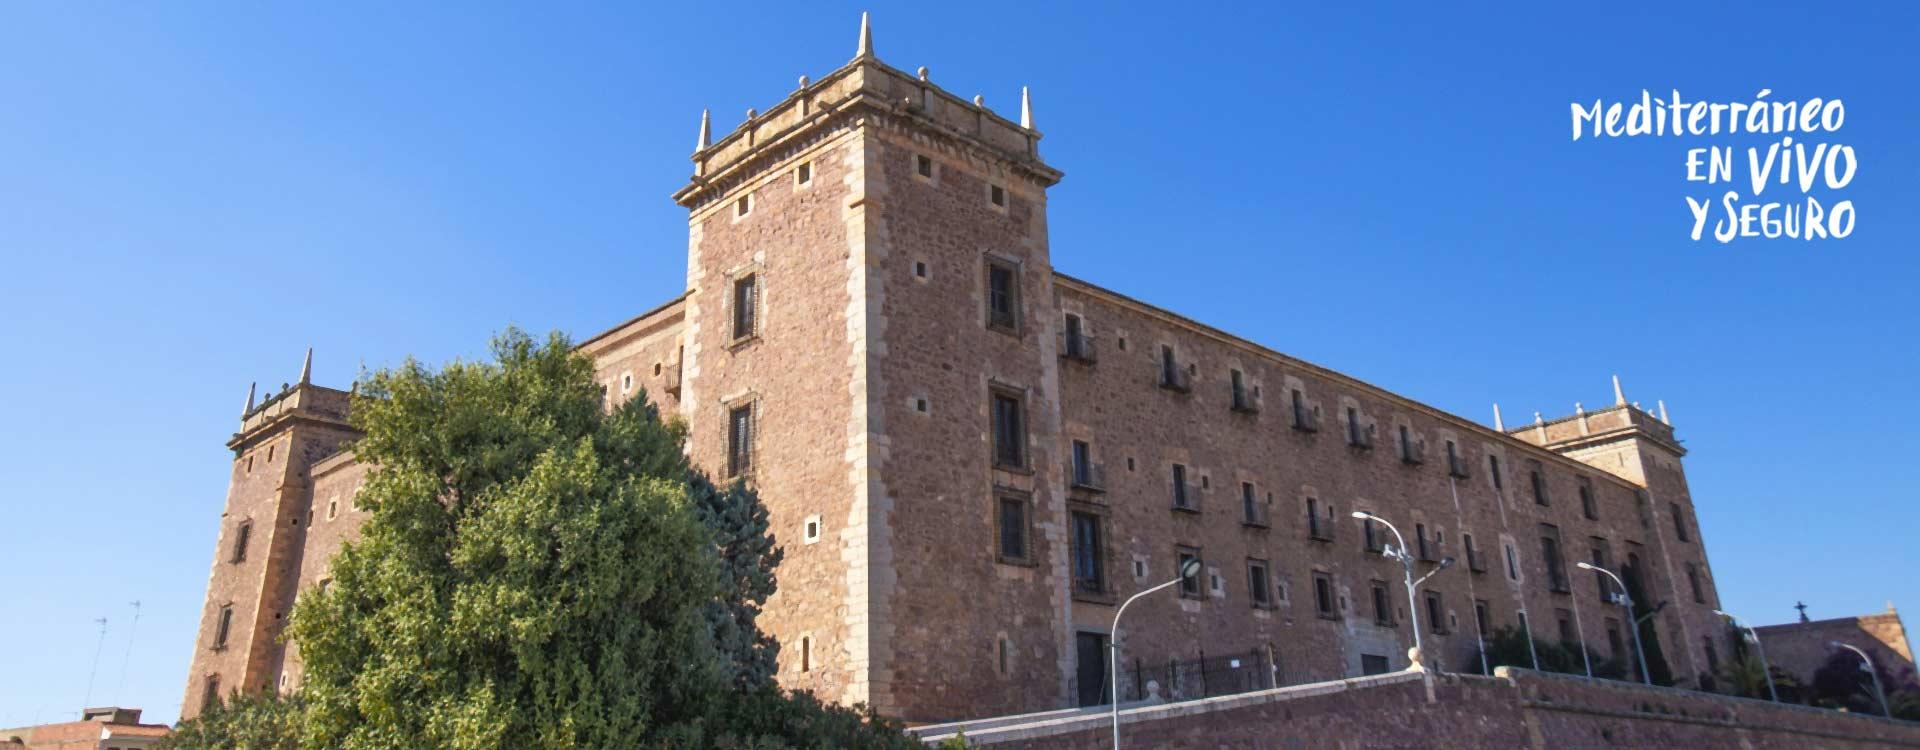 Real Monasterio de Santa María del Puig	